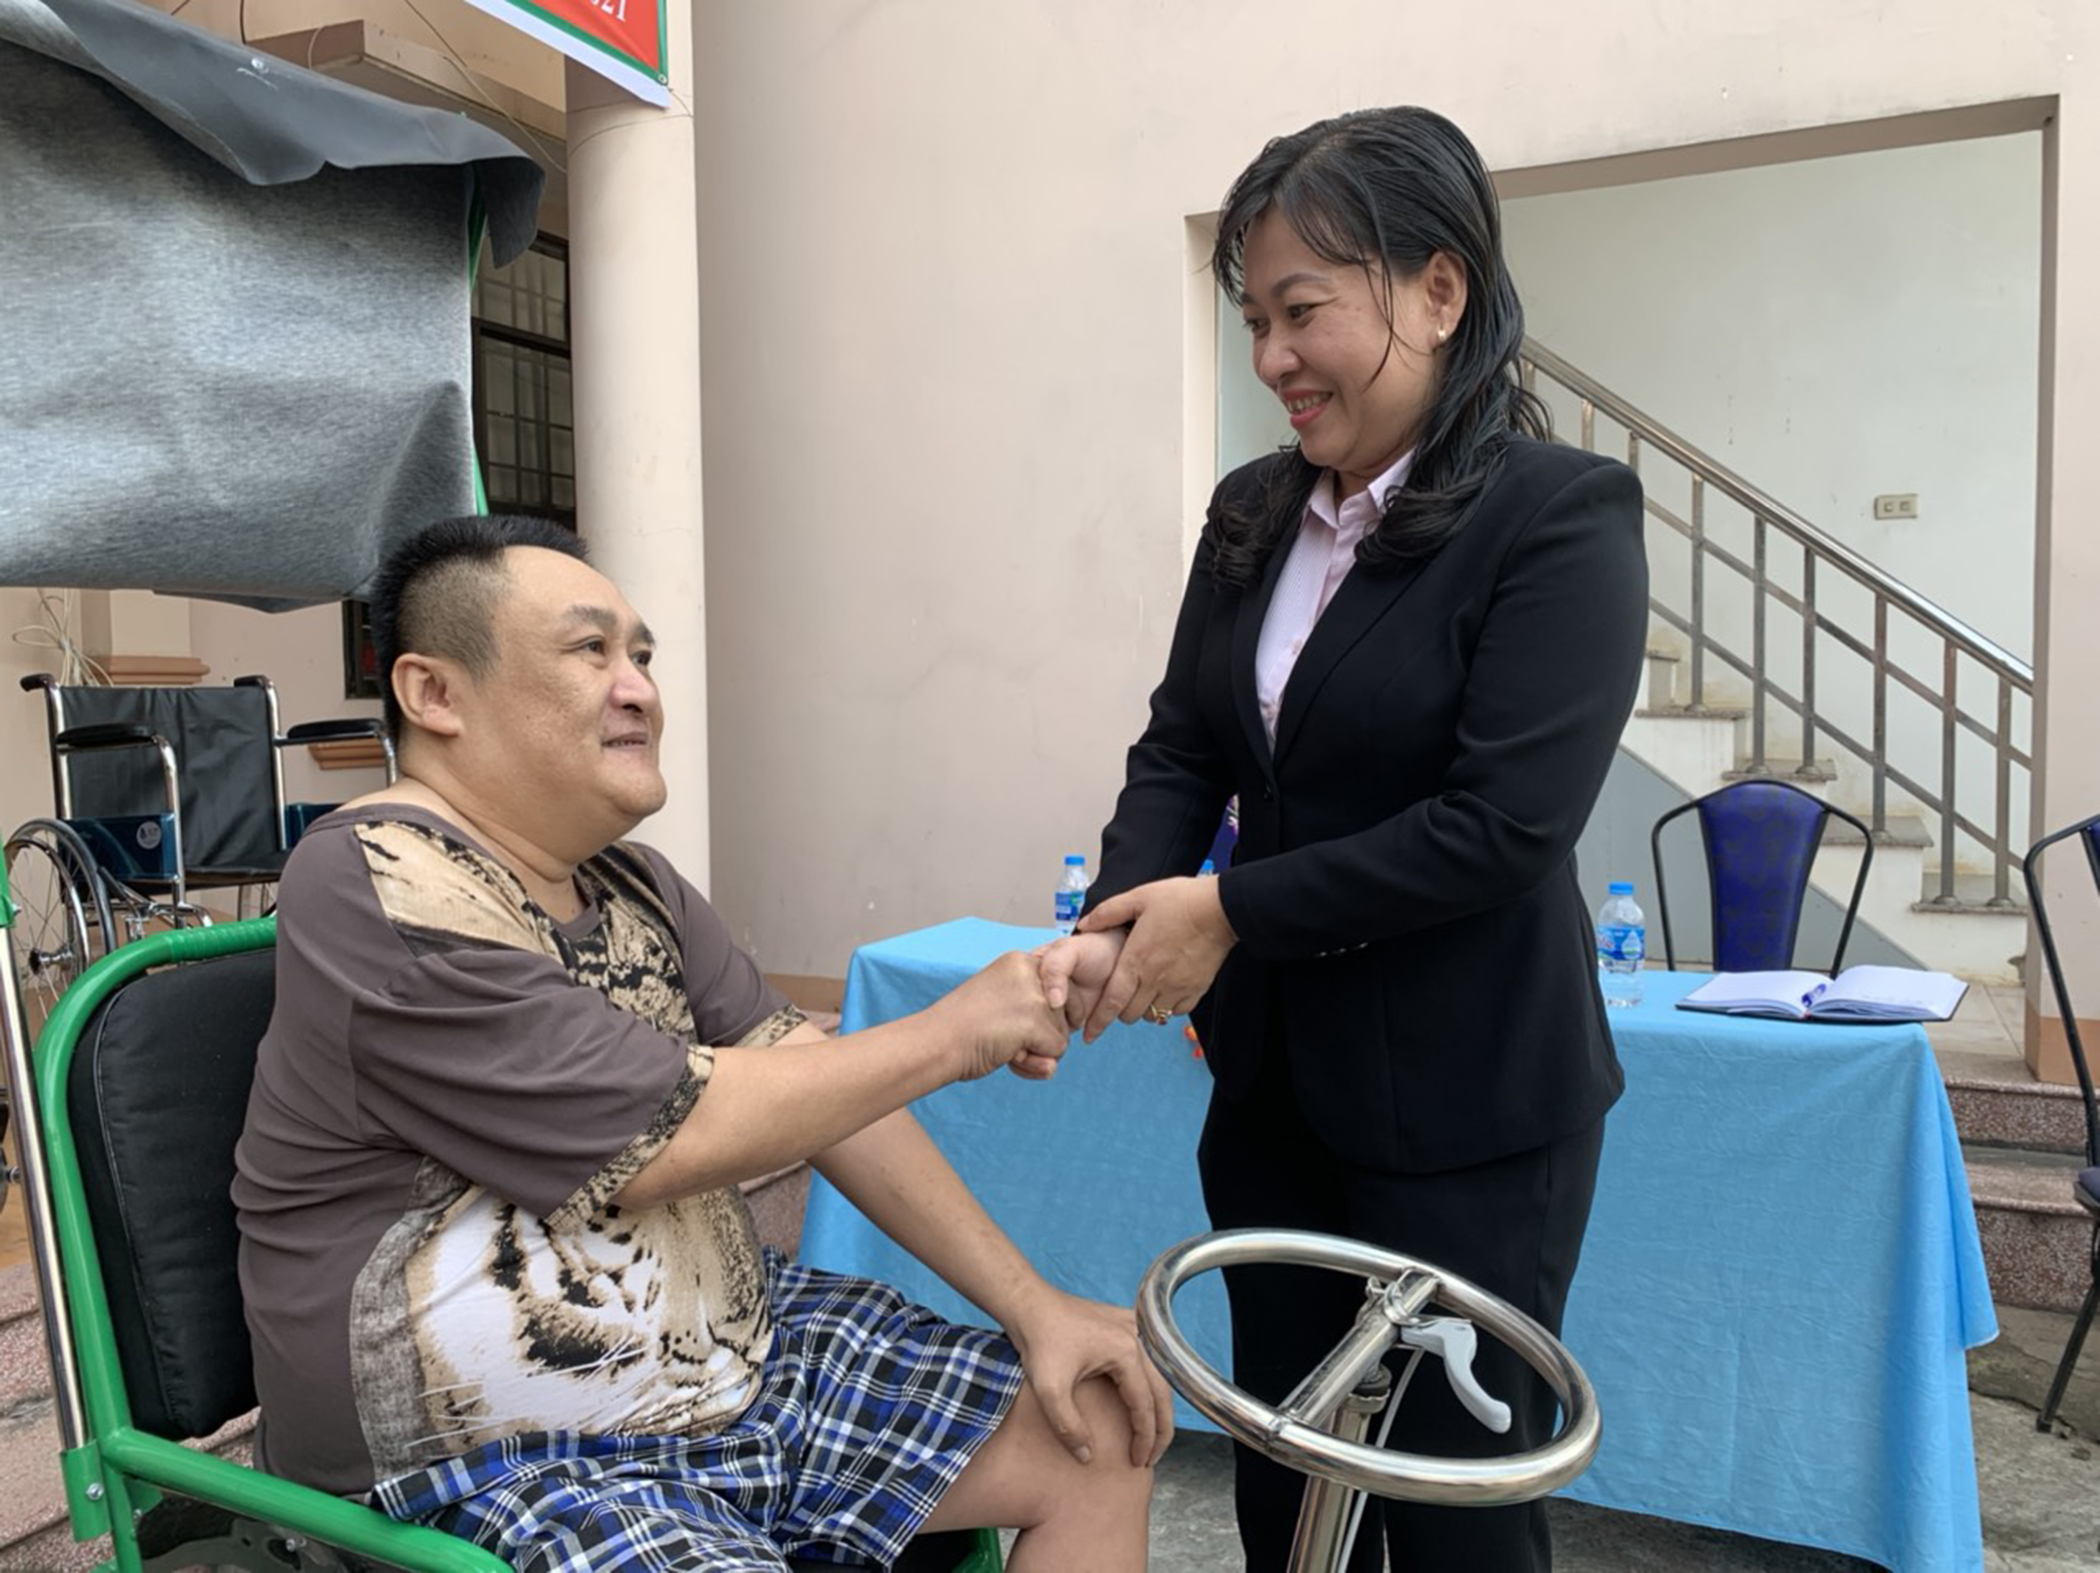 Bà Phạm Thị Kim Thương, Phó Giám đốc Công ty TNHH MTV Xổ số kiến thiết tỉnh thăm hỏi ông Hứa Anh Tuấn sau khi ông được tặng chiếc xe lắc.